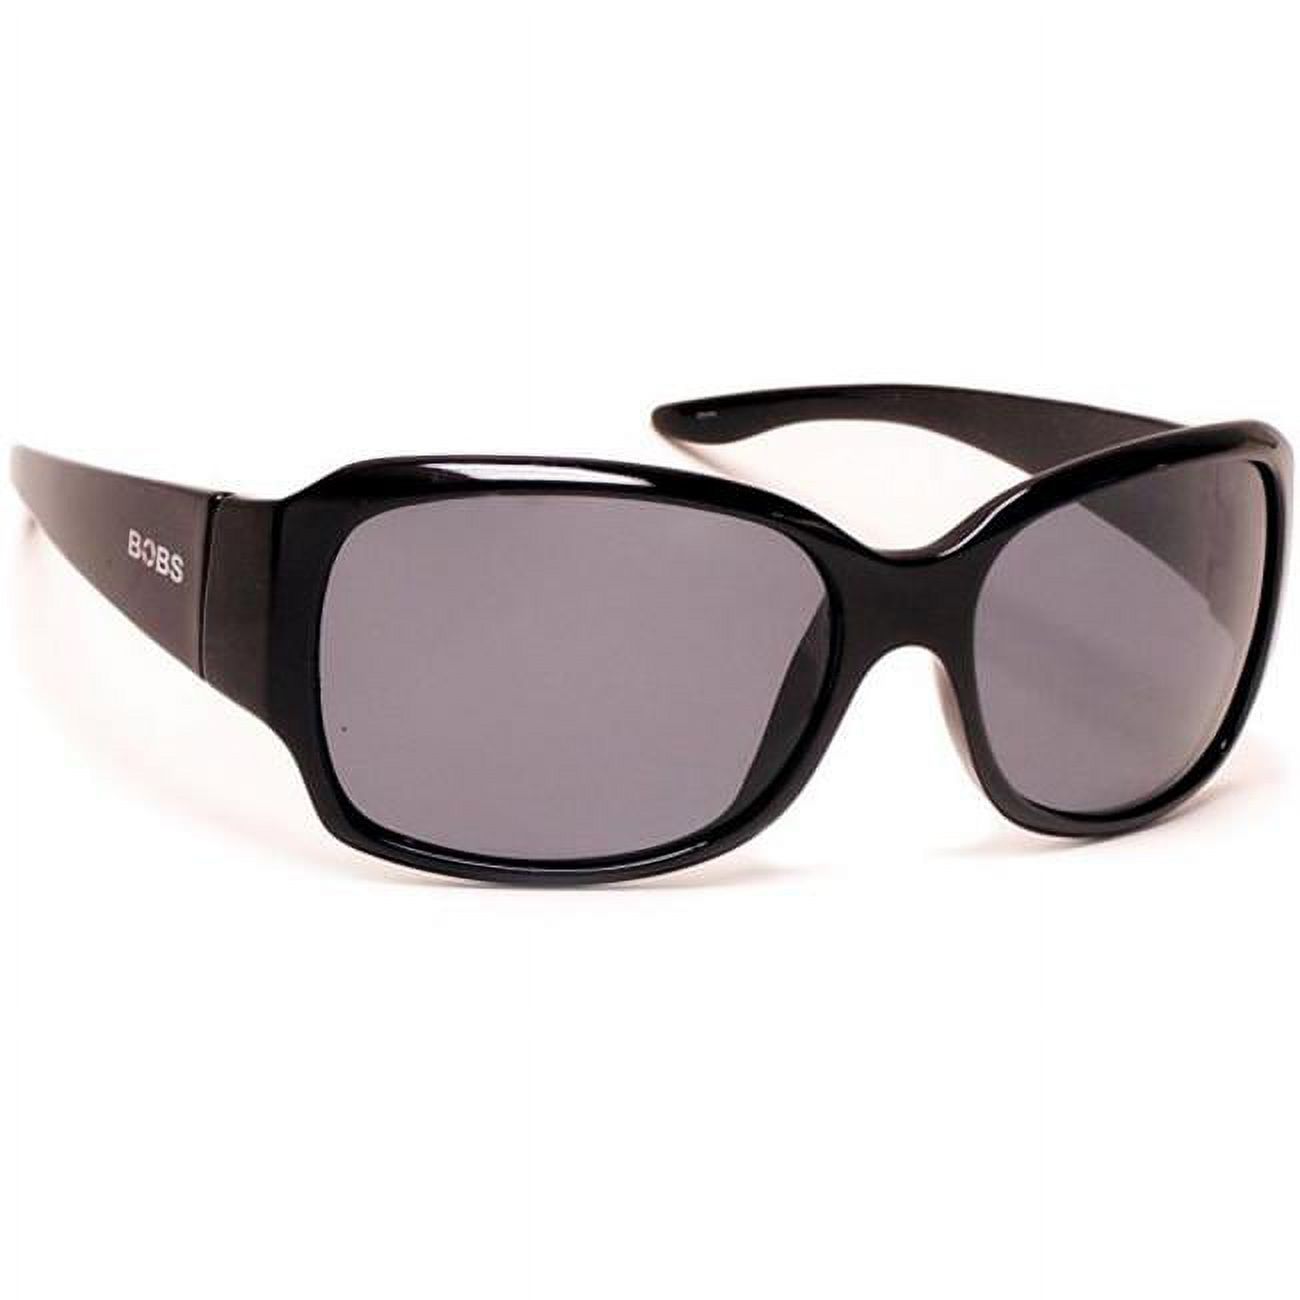 Coyote Eyewear 680562500813 FP-88 Floating Polarized Sunglasses, Black & Gray - image 1 of 2